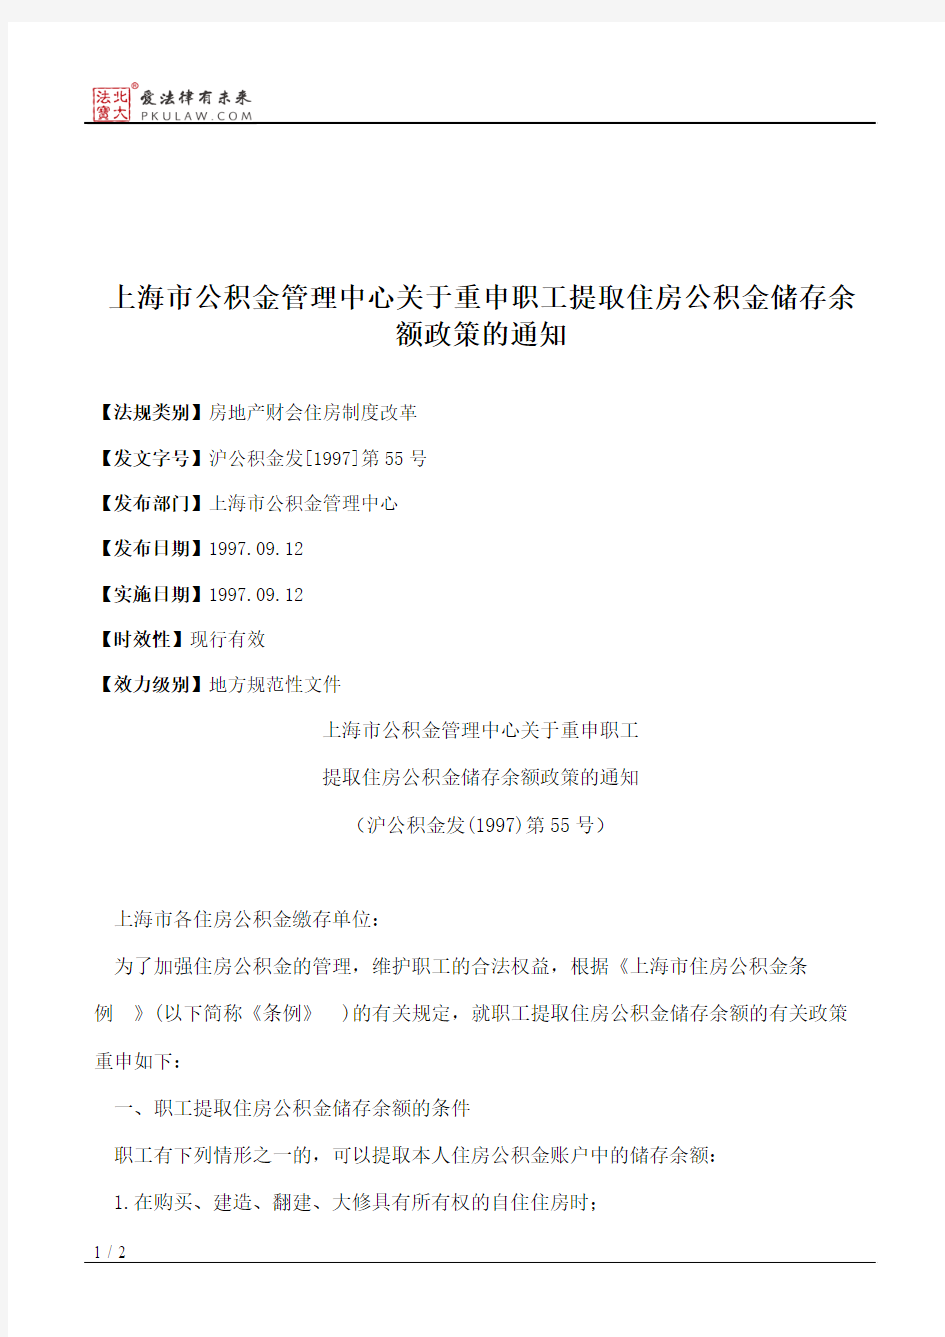 上海市公积金管理中心关于重申职工提取住房公积金储存余额政策的通知